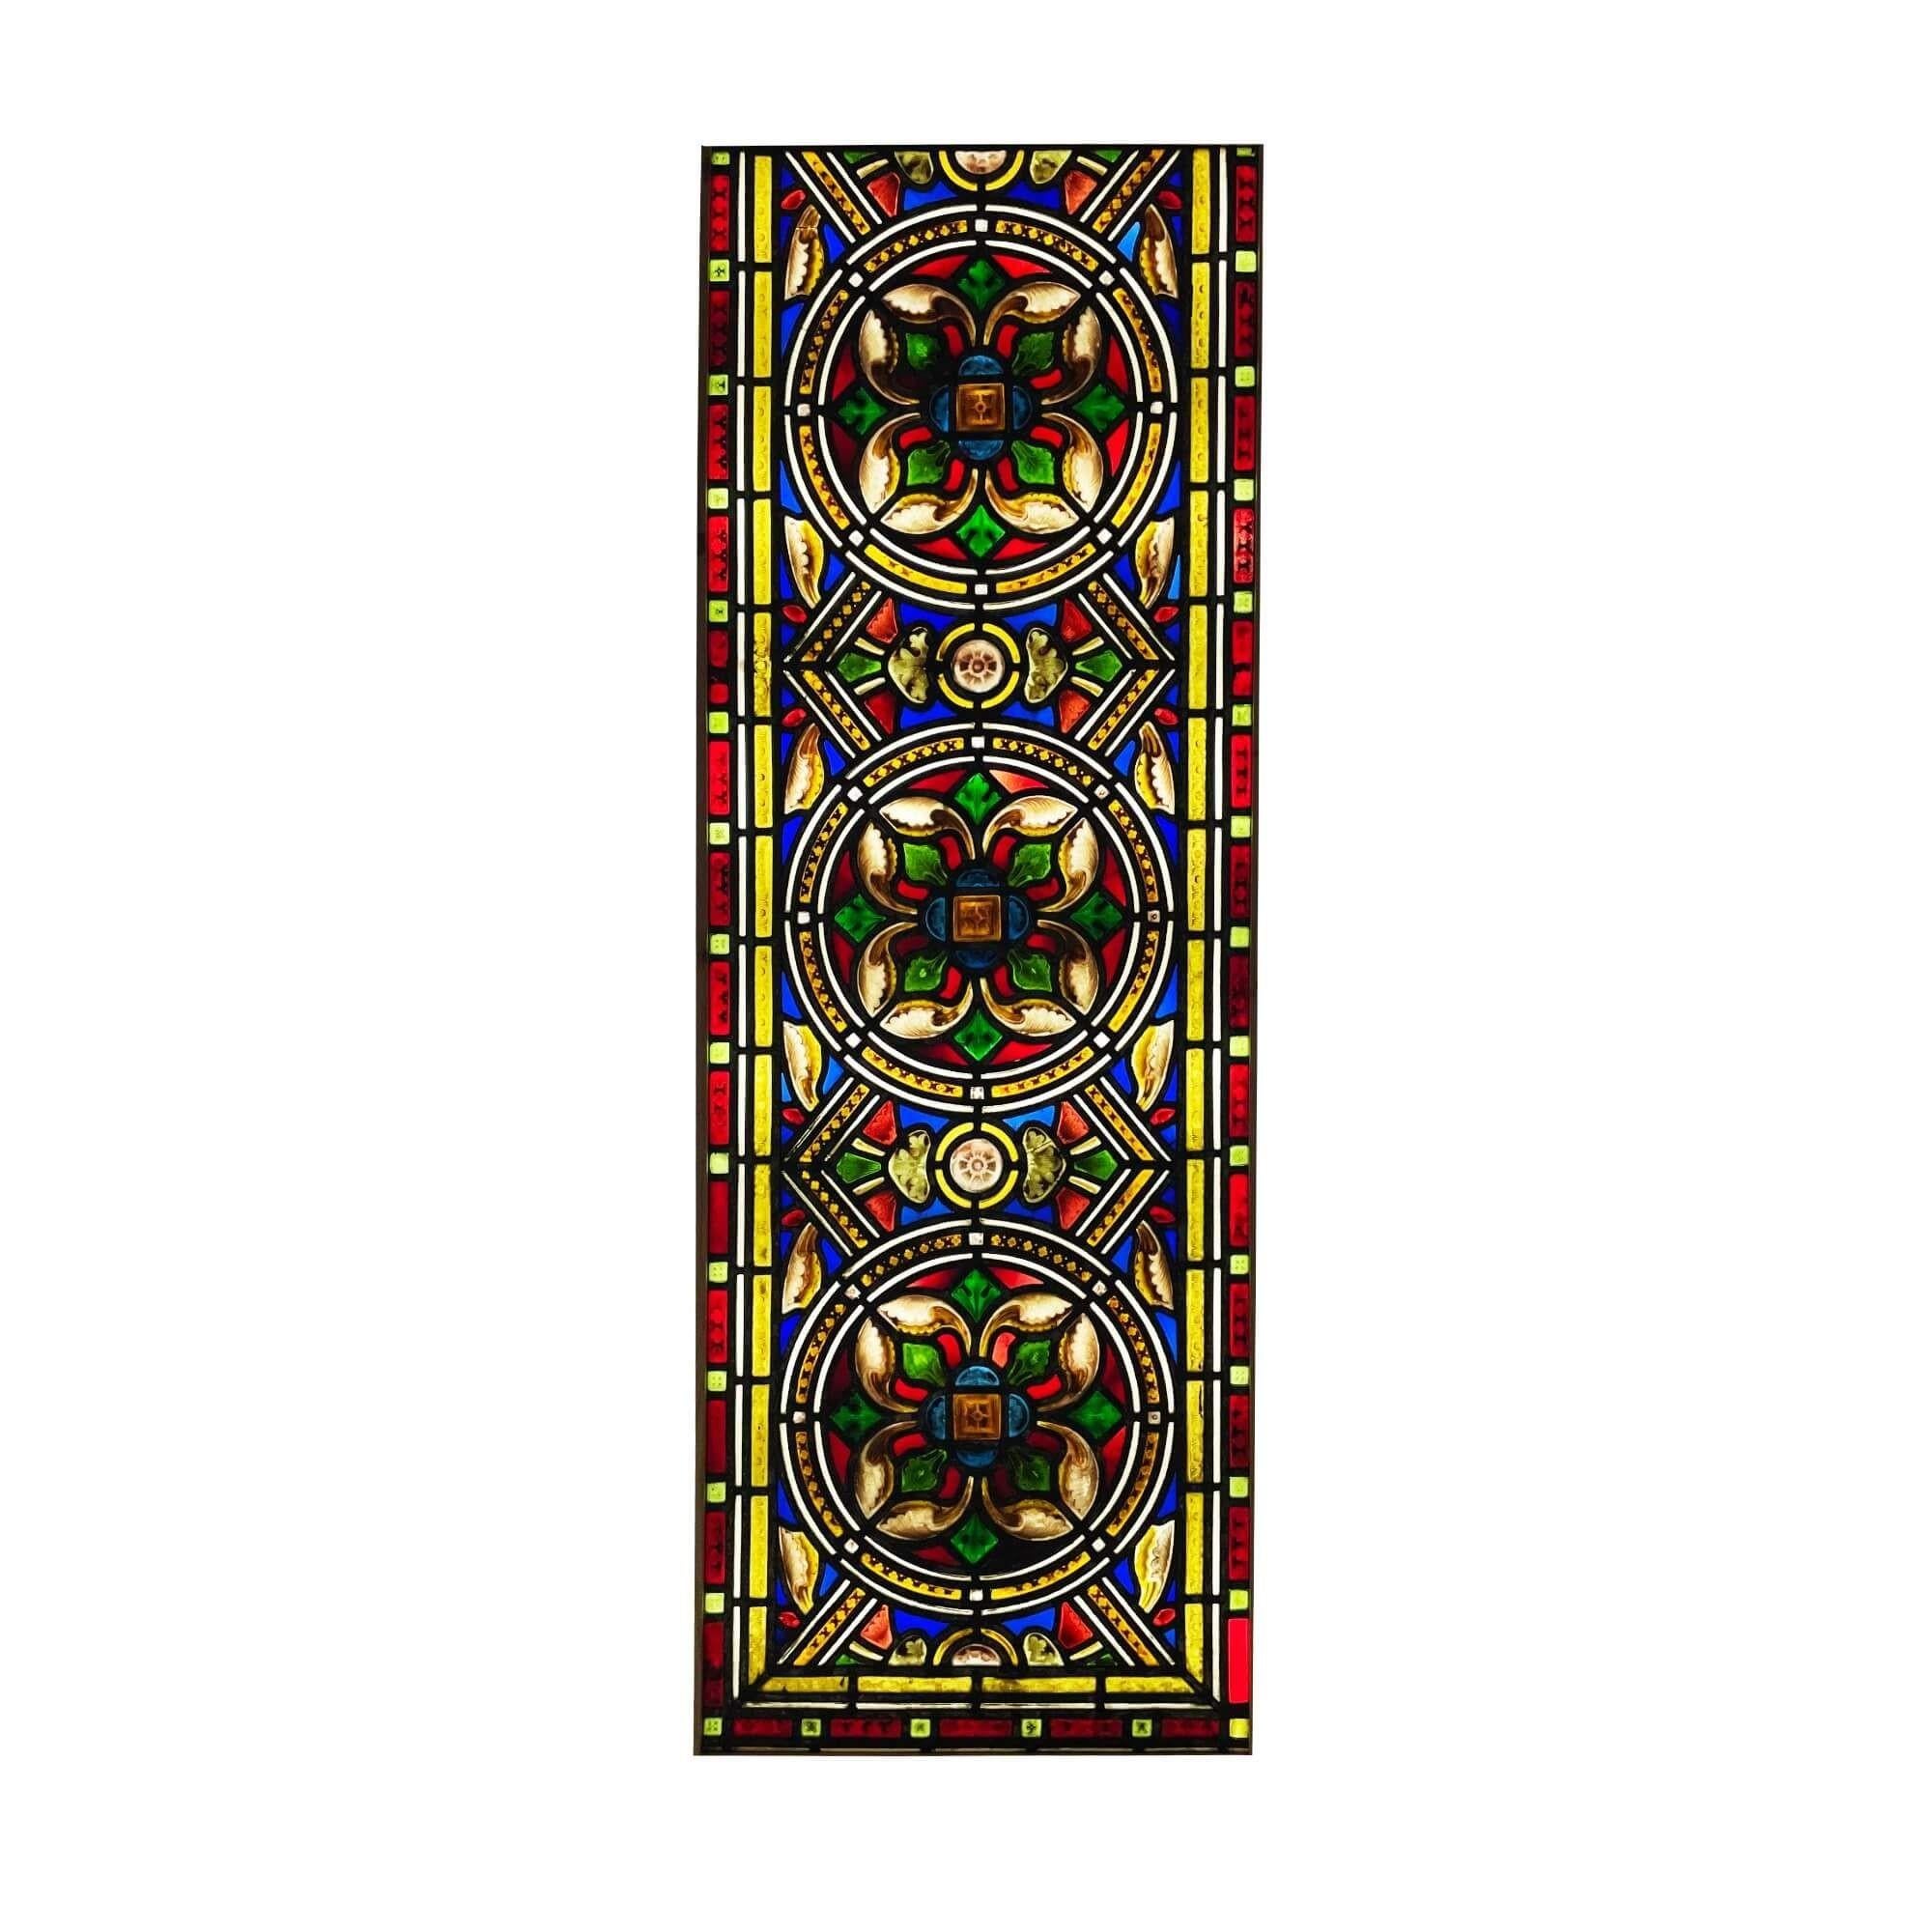 Grand vitrail antique de style médiéval de la fin du XIXe siècle, provenant d'une église du nord de l'Angleterre. Trois fleurs détaillées peintes à la main, que l'on pense être un motif de rose Tudor stylisé, se trouvent au cœur de cette pièce. Il